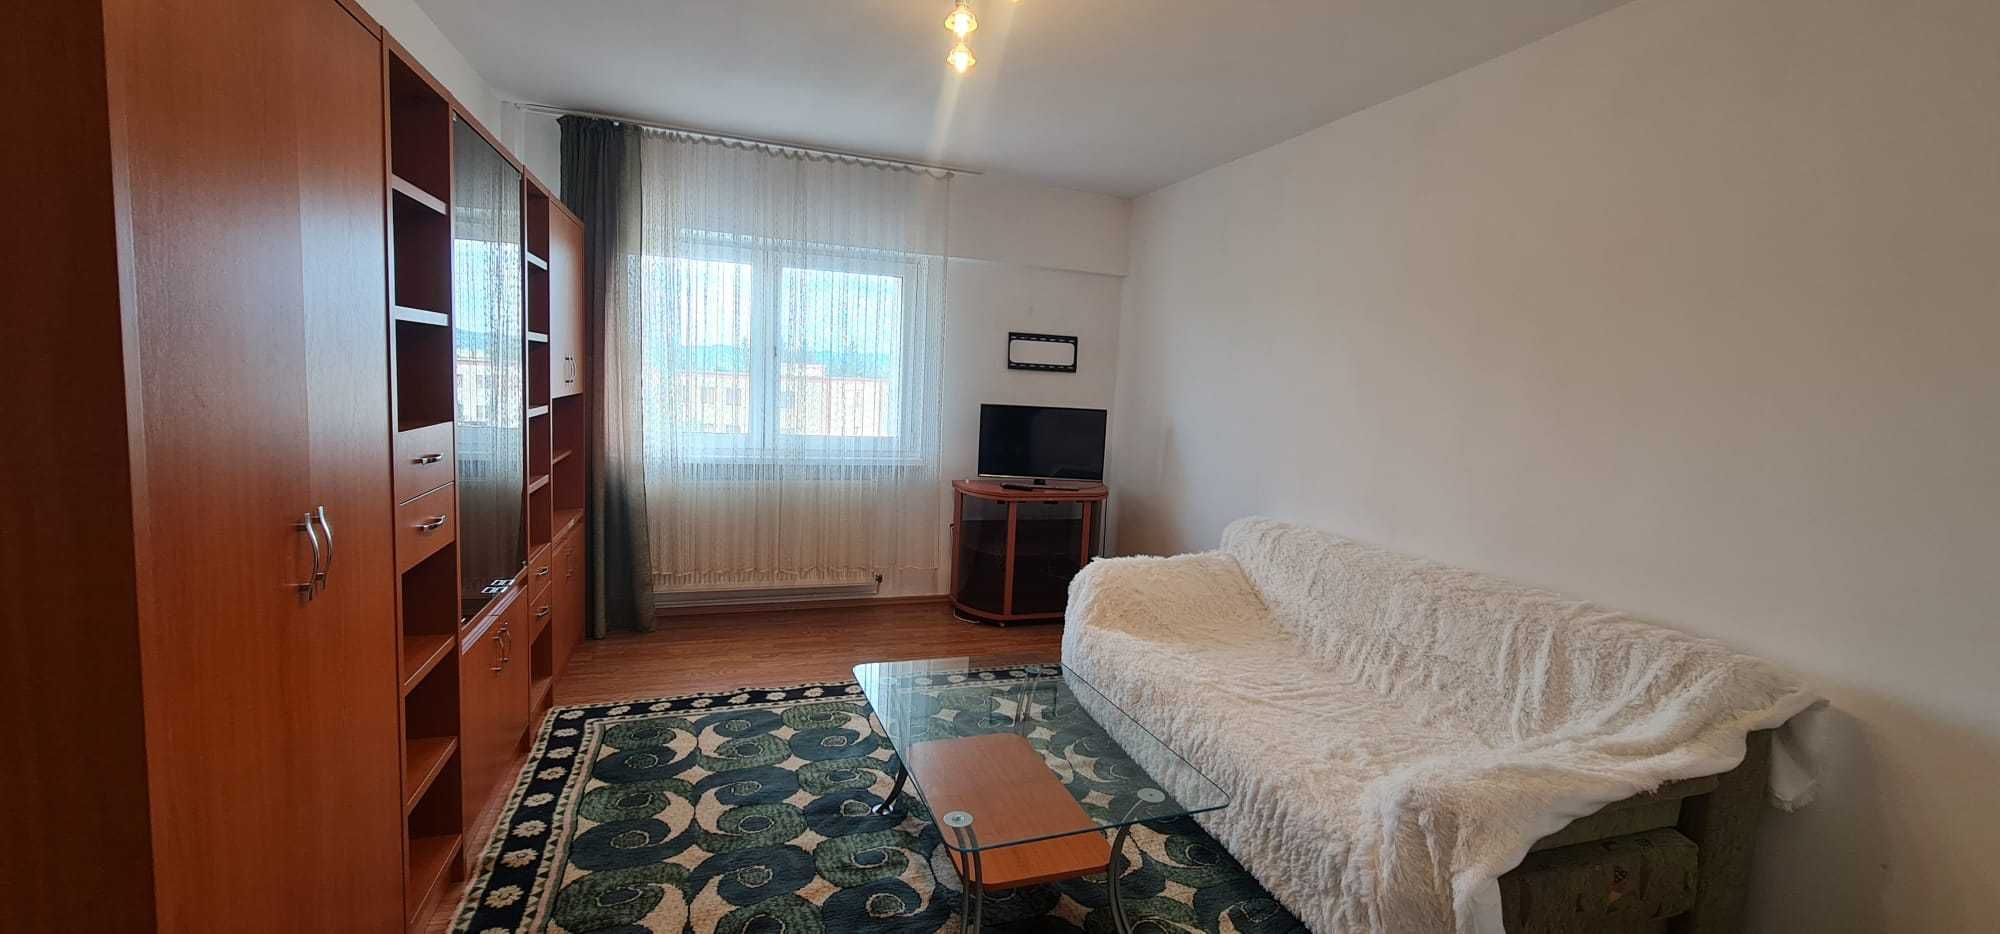 Închiriez apartament în Sibiu cu 3 camere decomandate - zonă centrală